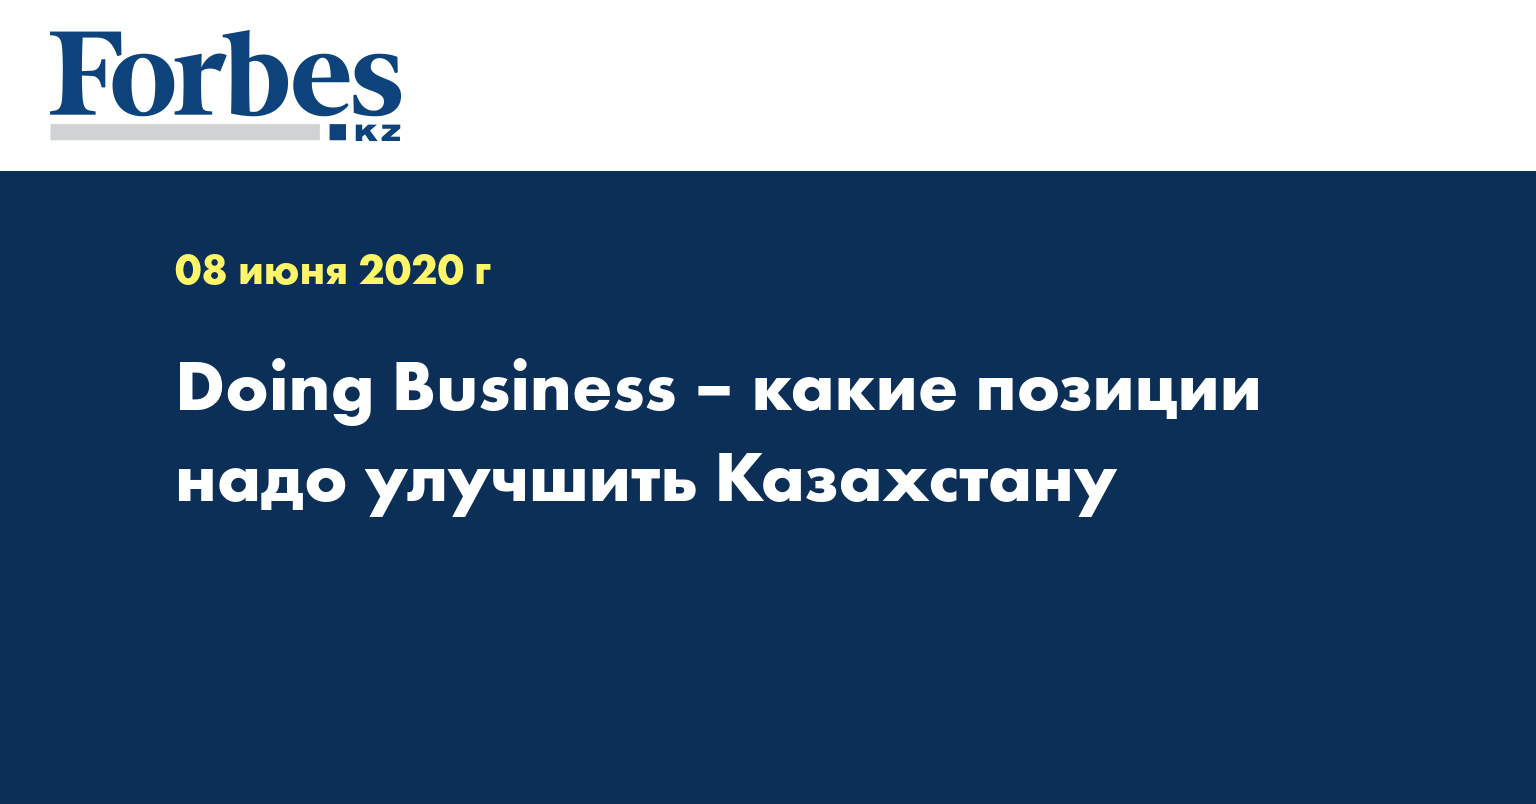 Doing Business – какие позиции надо улучшить Казахстану